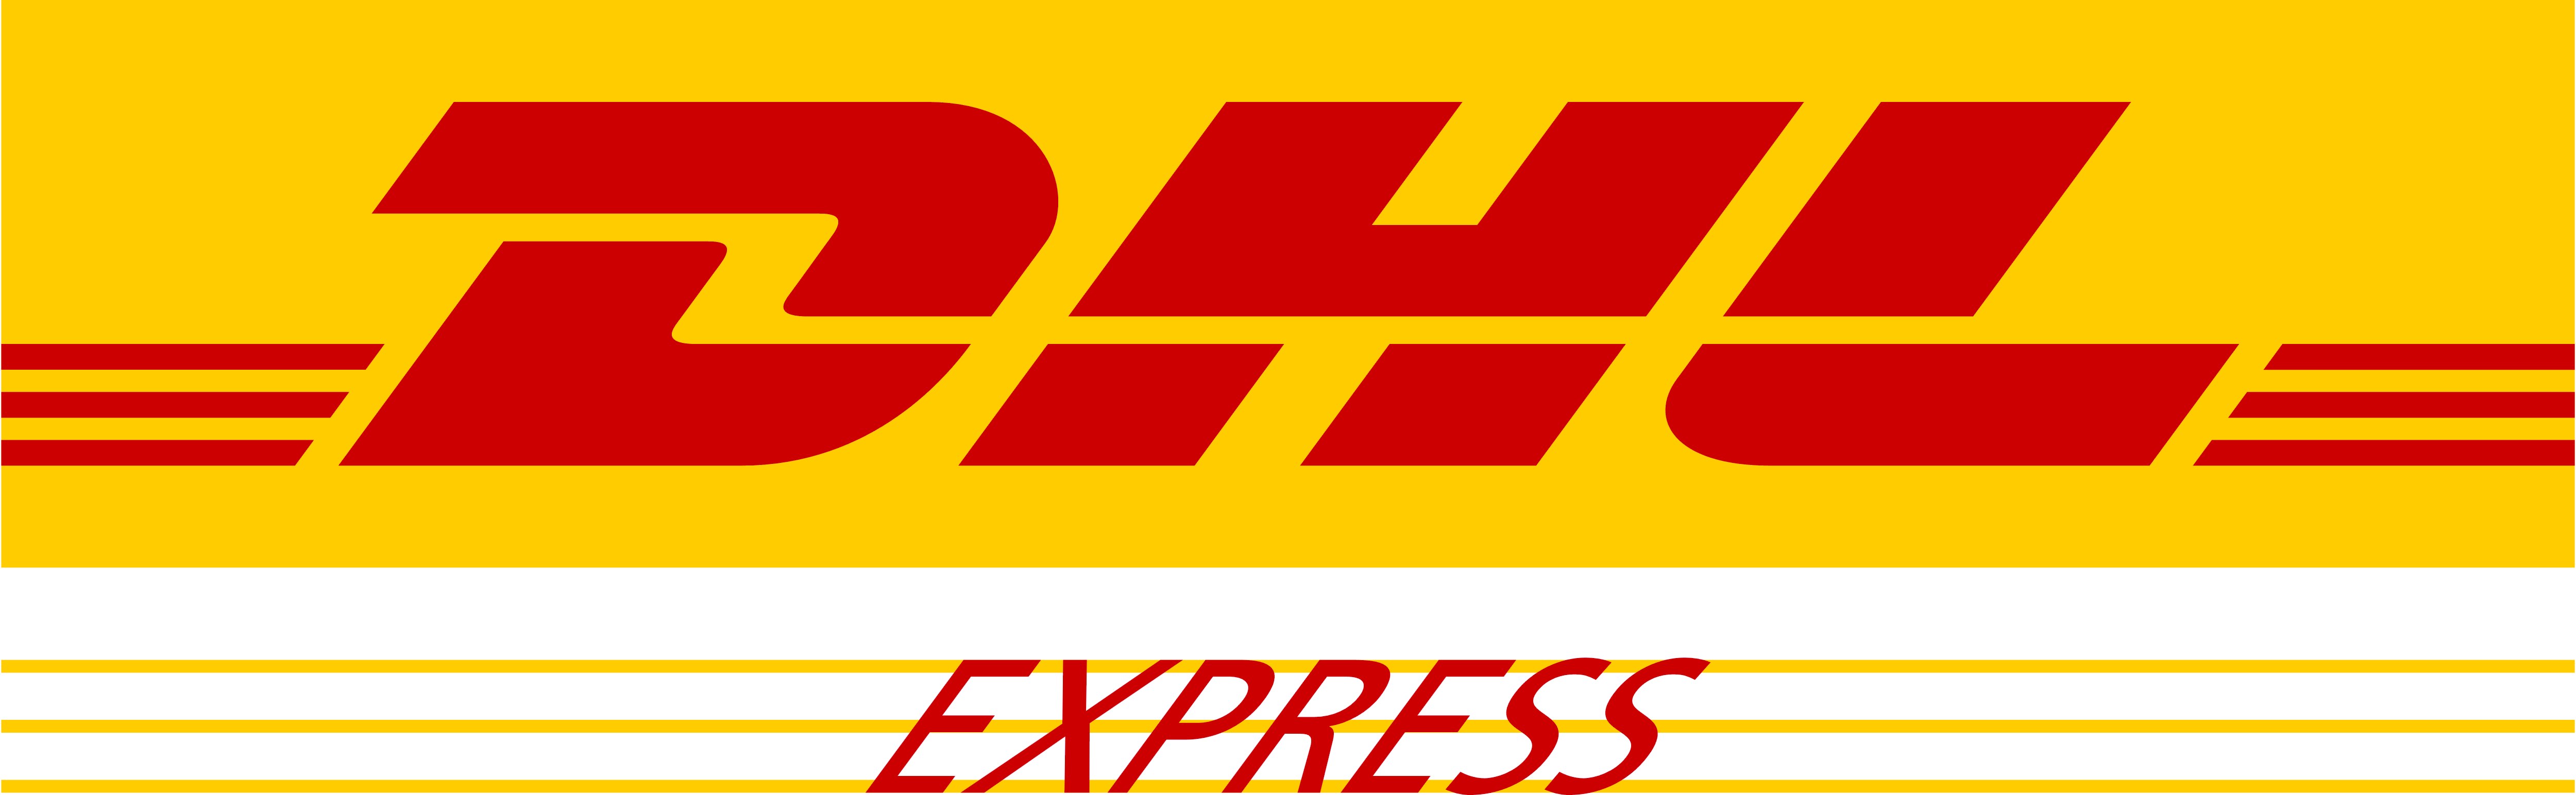 DHL_Express_logo.png